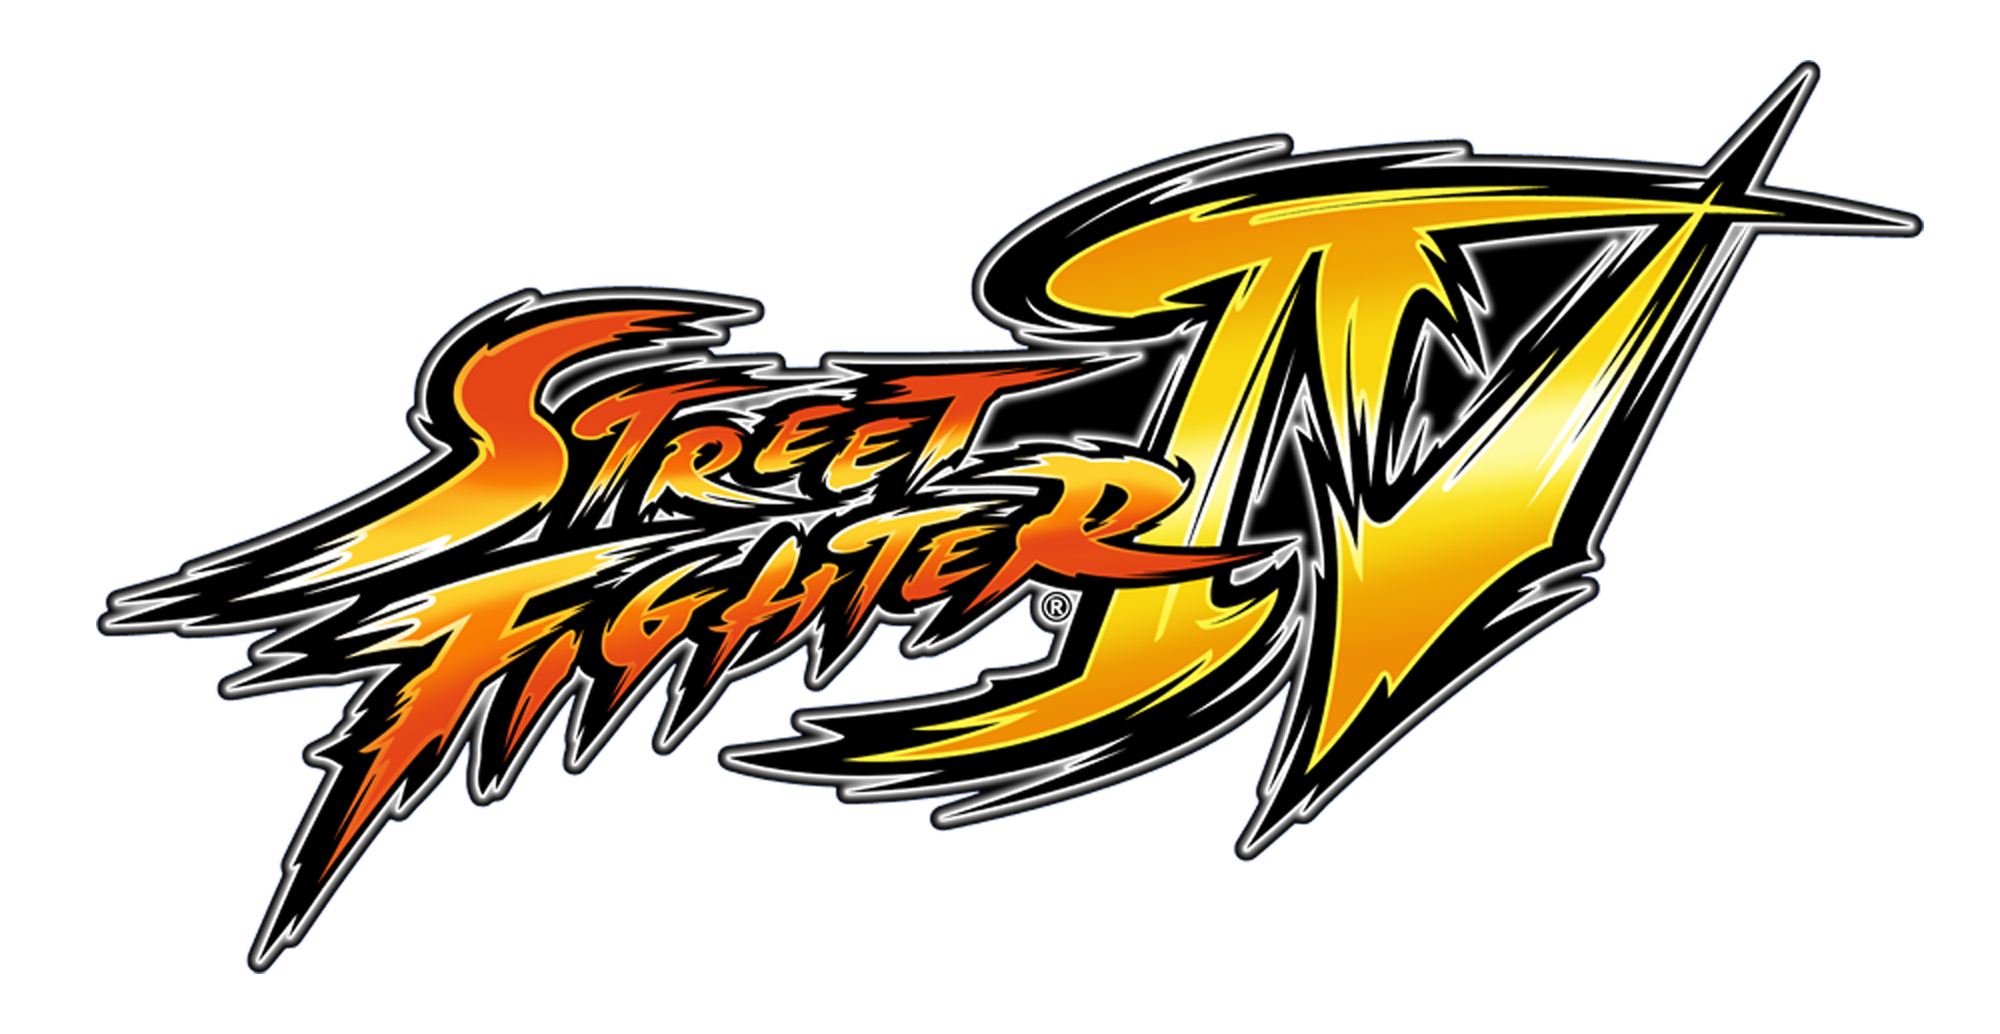 Street-Fighter-IV-Logo.png